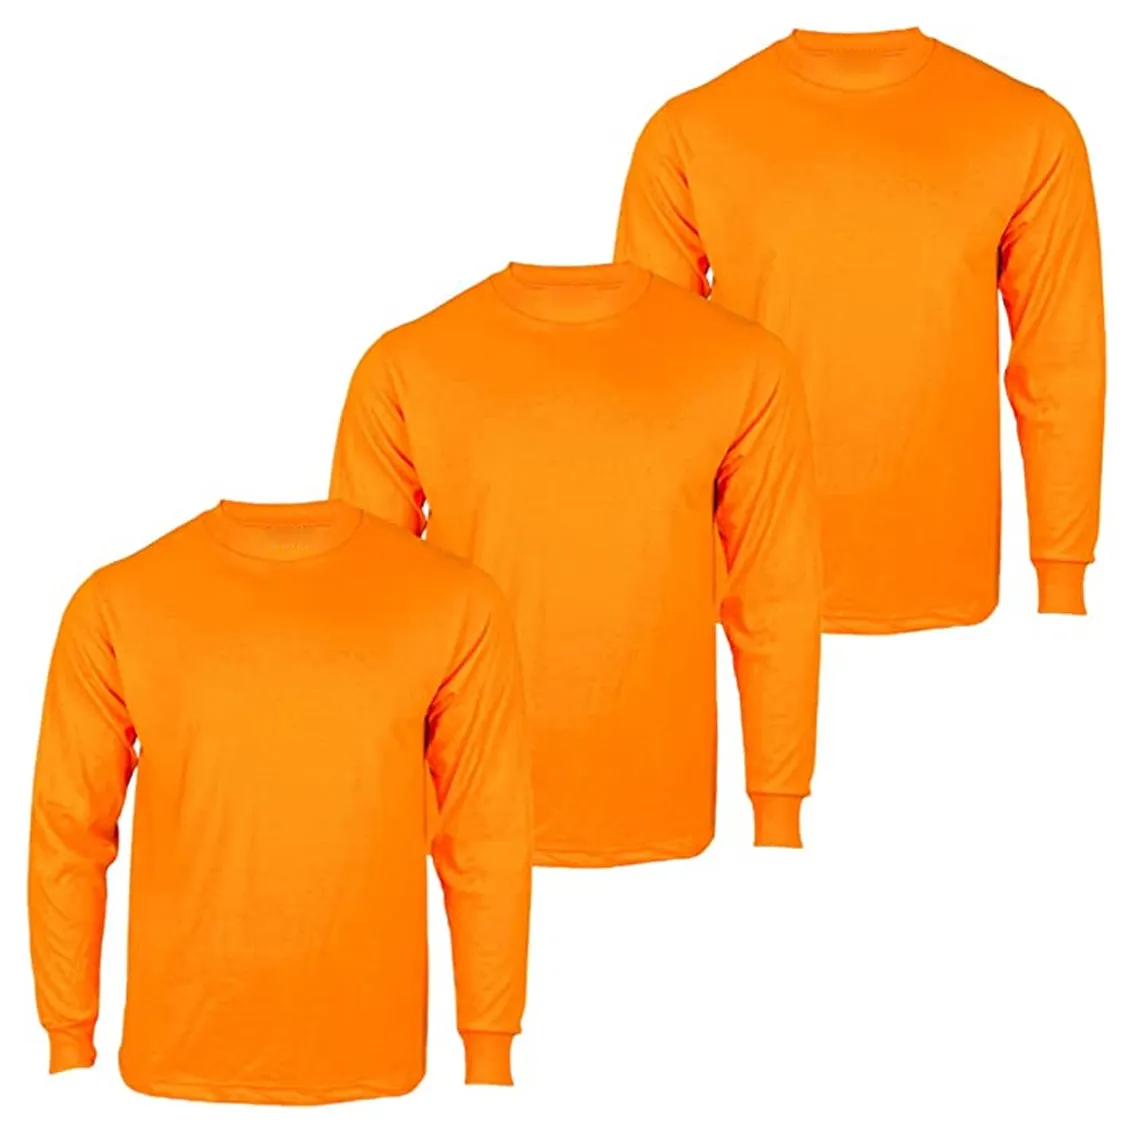 नारंगी के लिए निर्माण शर्ट पुरुषों चिंतनशील स्ट्रिप्स वृद्धि दृश्यता कम प्रकाश धूमिल लंबी आस्तीन निर्माण हाय विज़ प्रतिबिंबित